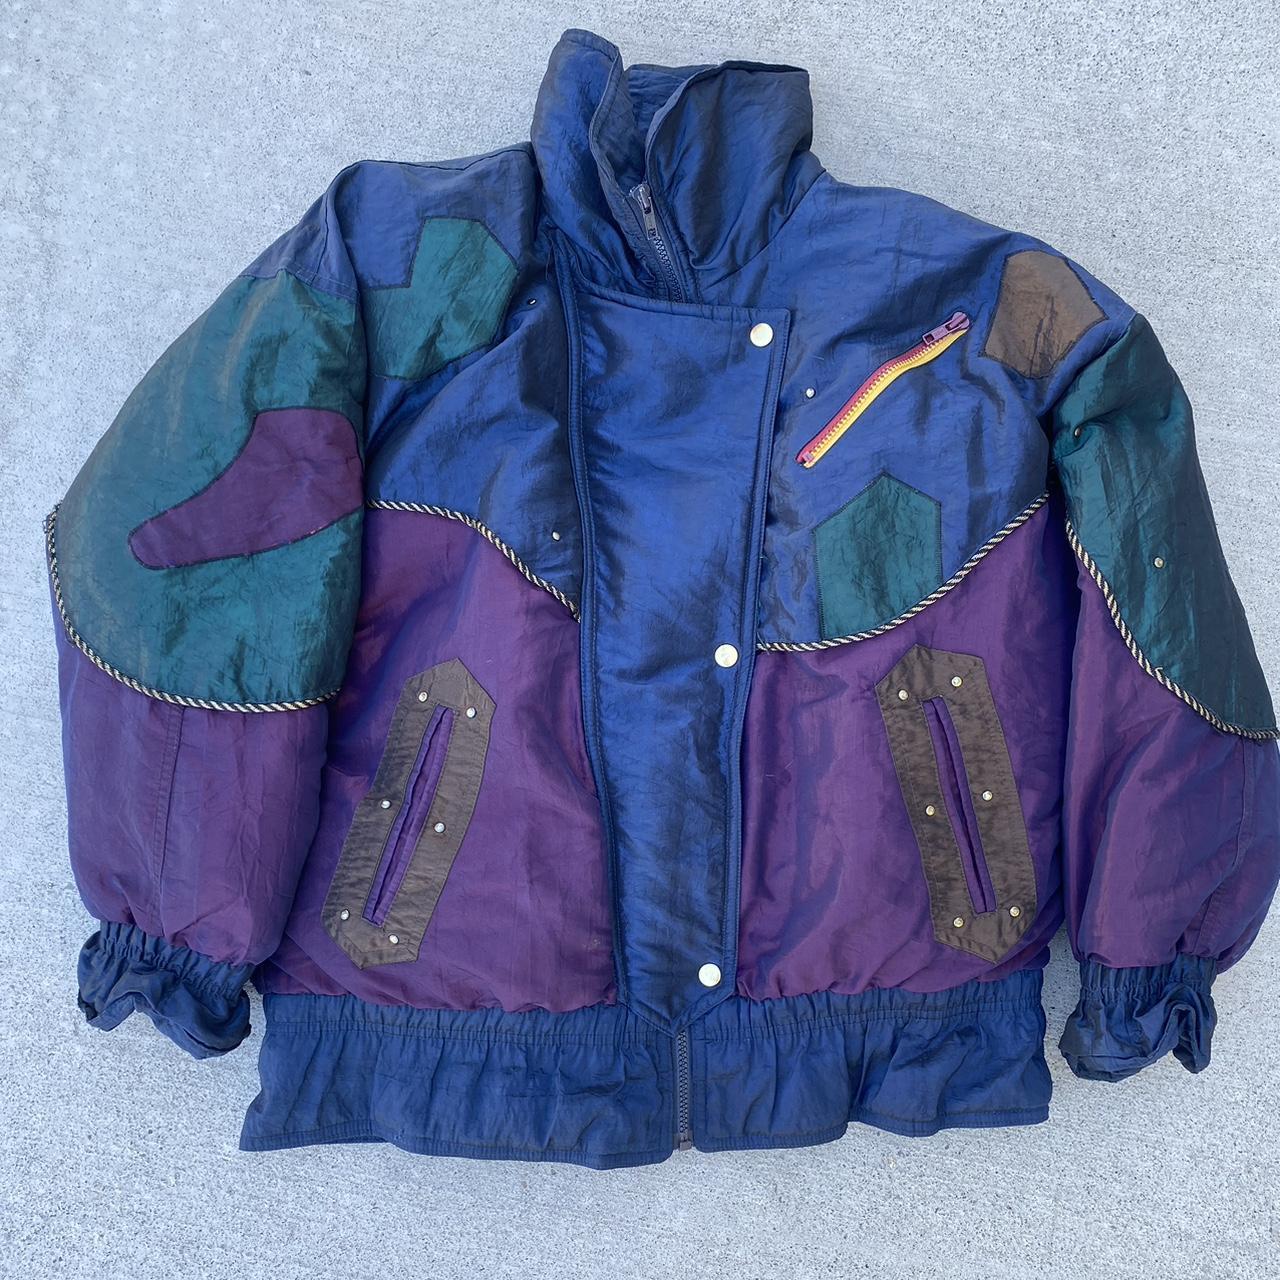 Vintage puffer jacket - Depop